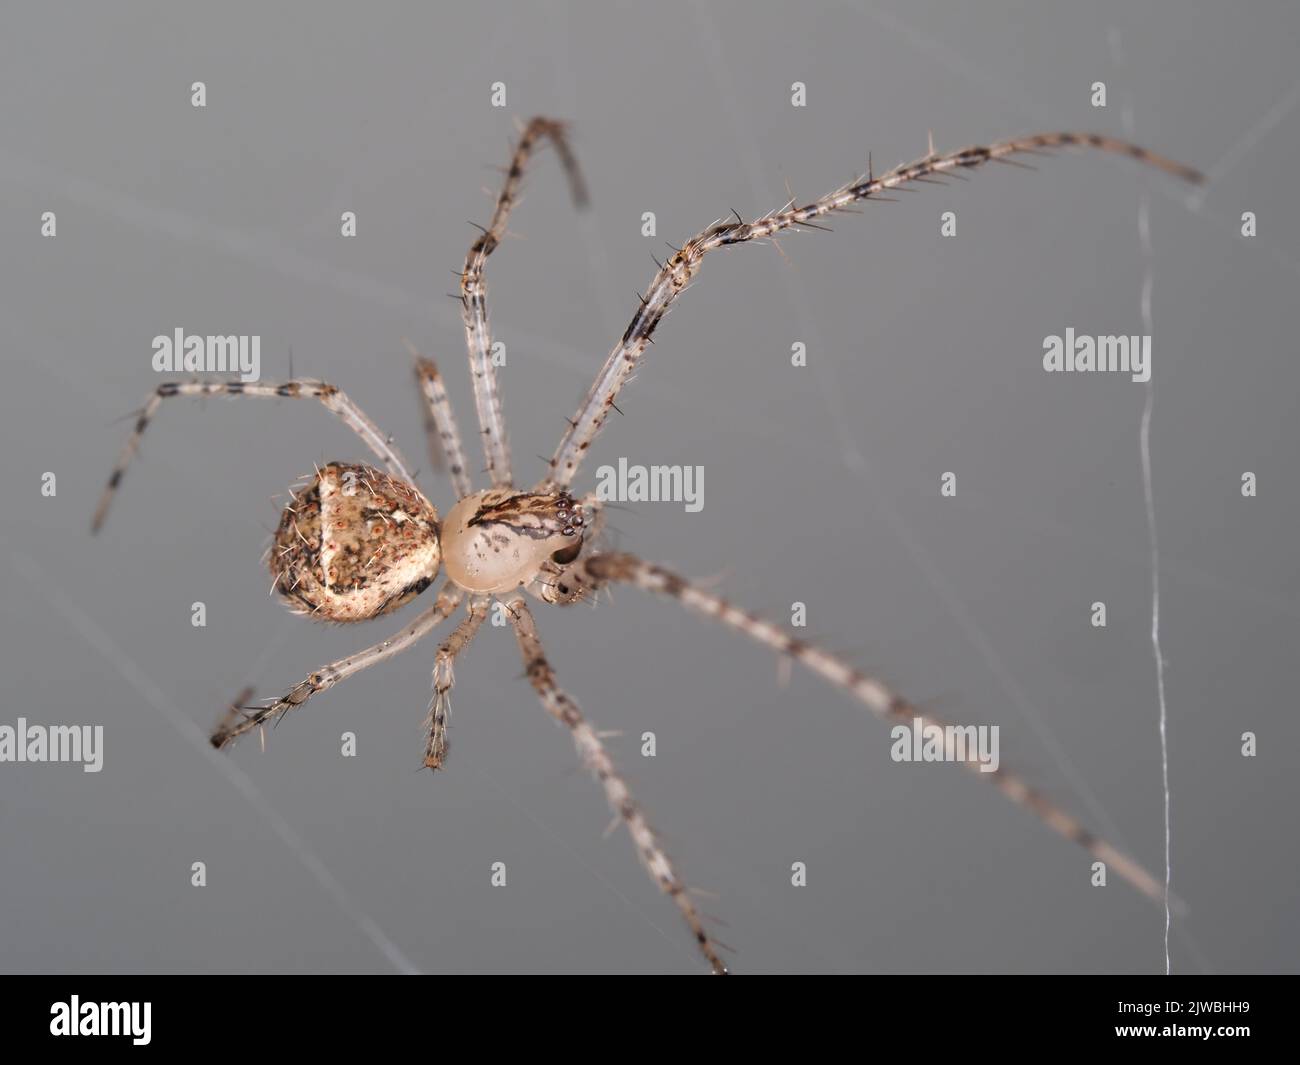 A spider identified as Mimetus eutypus Stock Photo